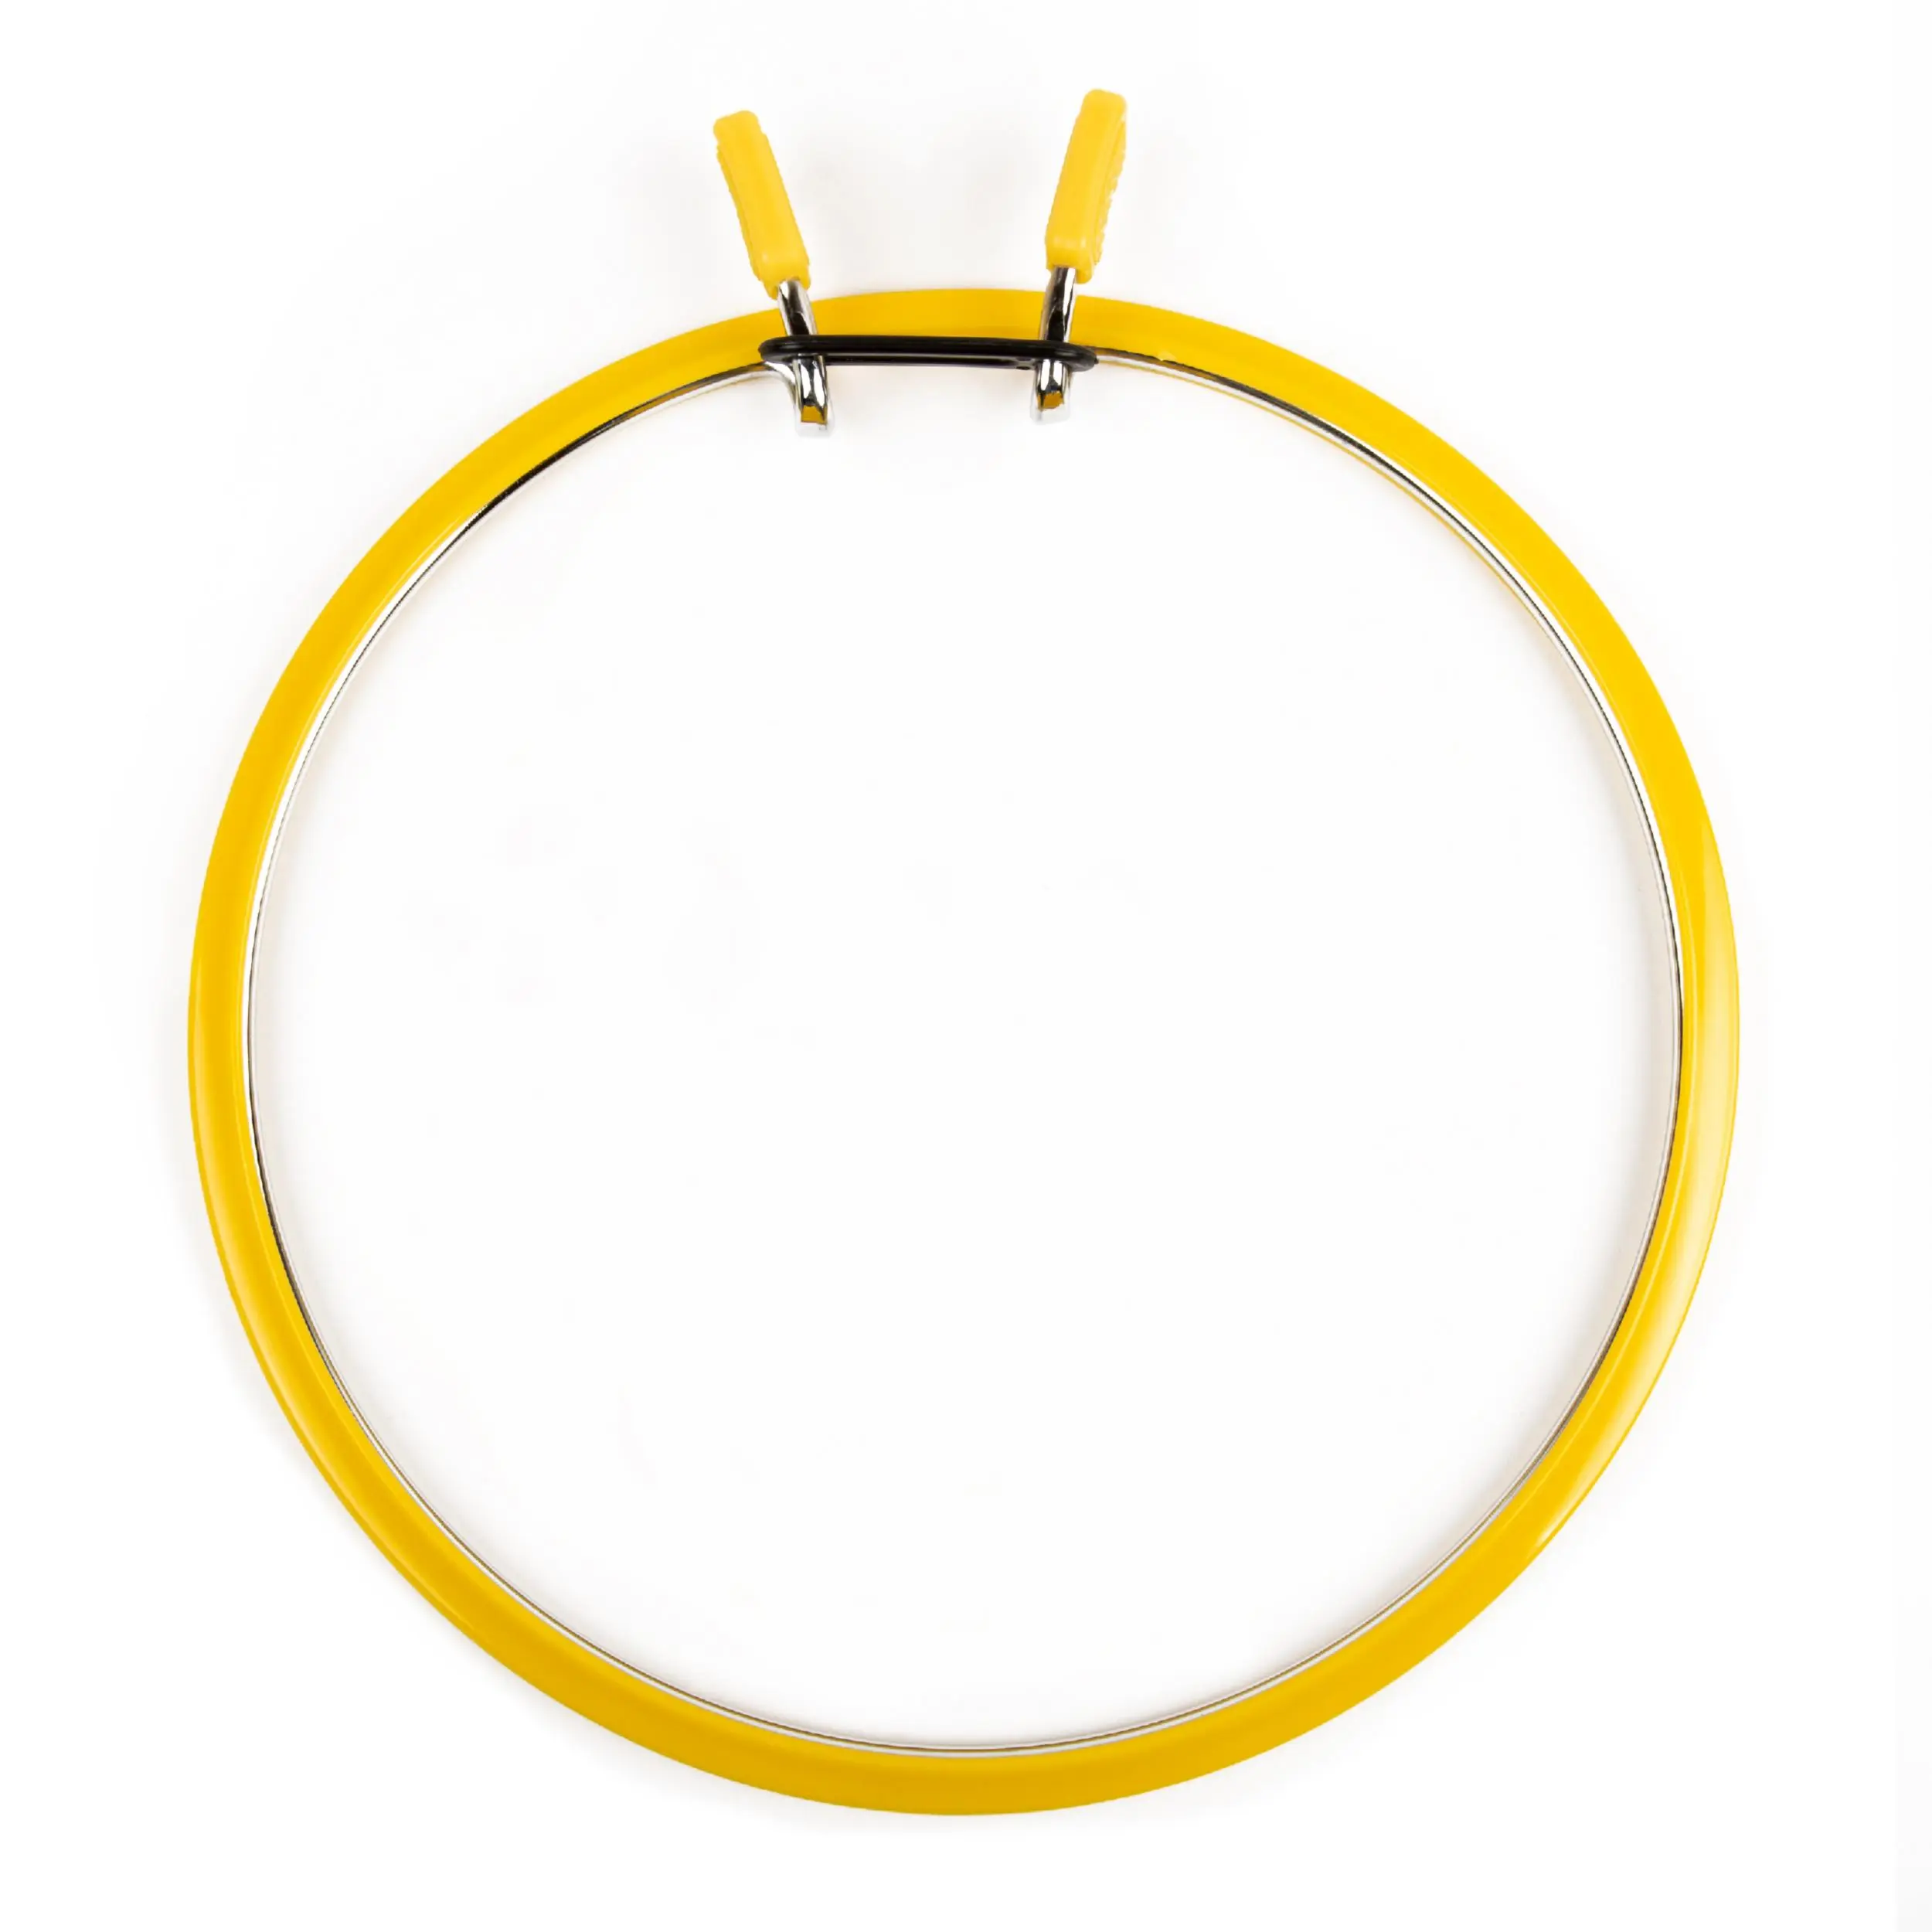 160-1/жовті Пяльці Nurge пружинні для вишивання та штопки, висота обідка 7мм, діаметр 195мм